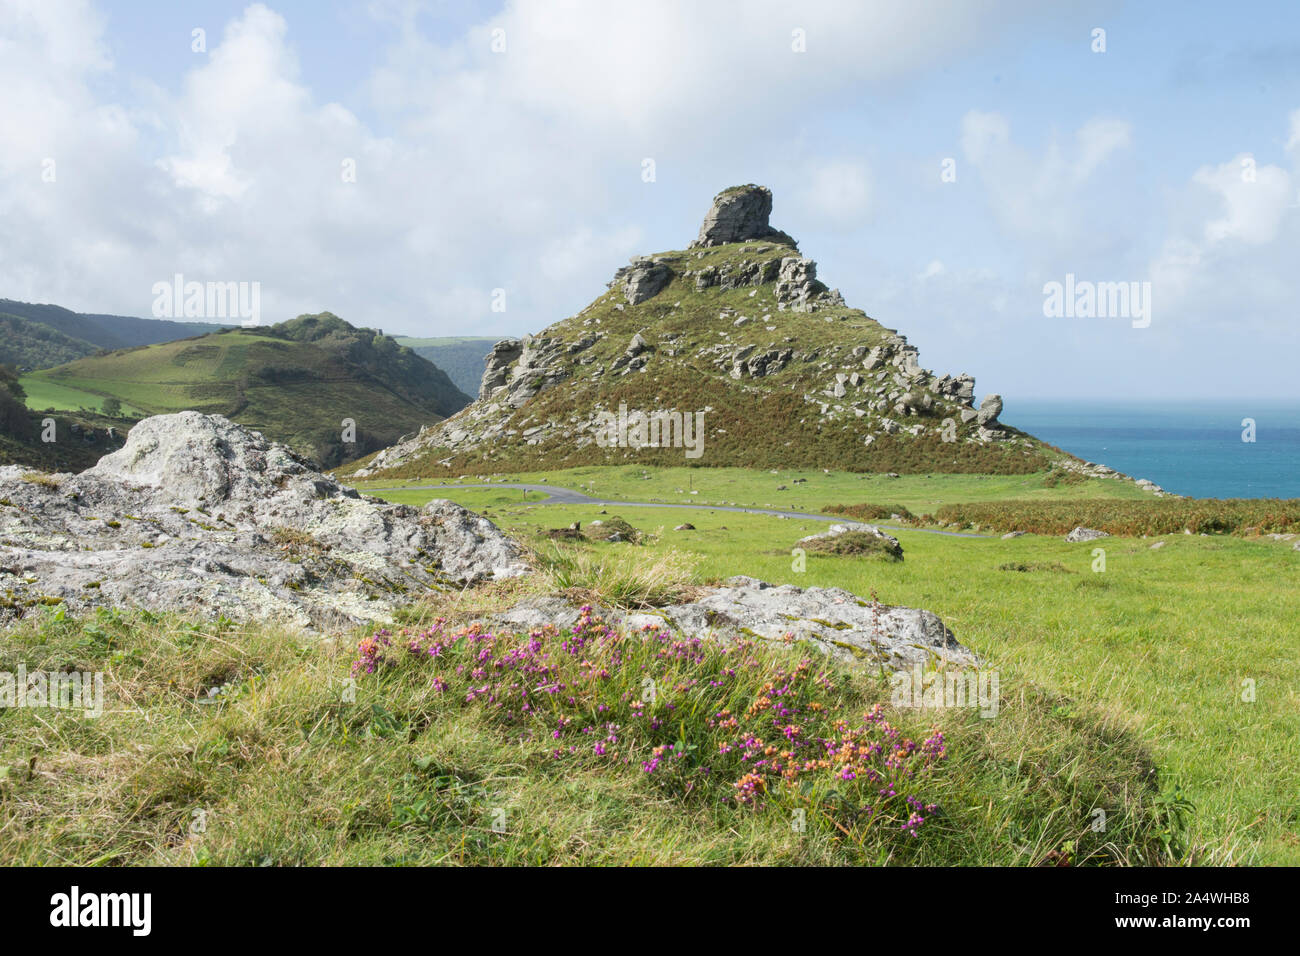 Castle Rock dans la vallée de roches avec l'au-delà de la mer, paysage, soleil, Lynton, Devon Banque D'Images